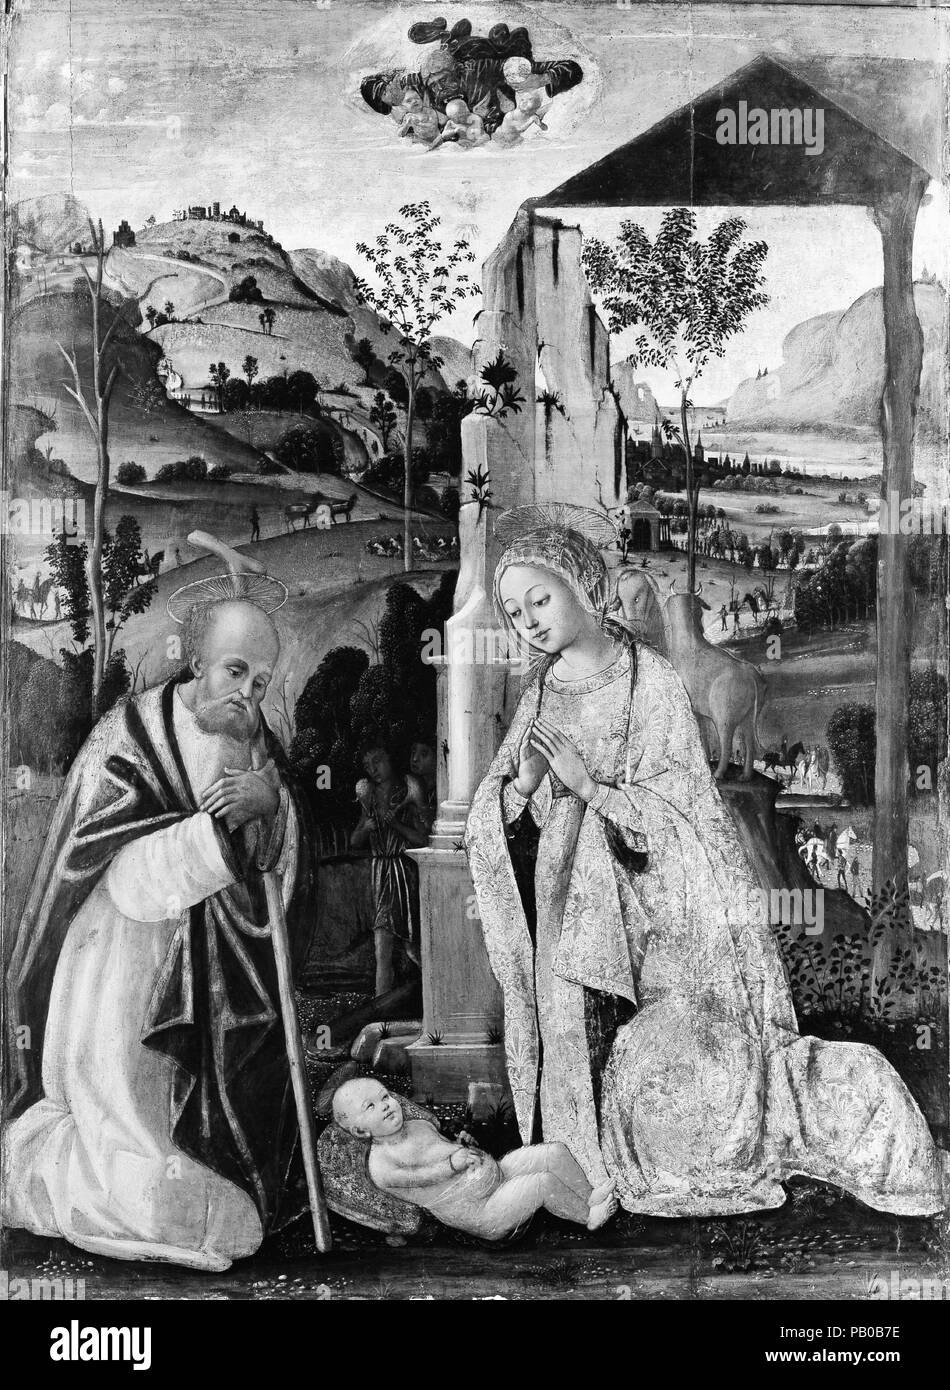 La nativité. Artiste : GEORGES CLAIRIN (italien, Francesco, 1460-1516 ou plus tard). Dimensions : Hors tout 55 3/8 x 40 1/2 in. (140,7 x 102,9 cm), surface peinte 54 7/8 x 39 3/4 in. (139,4 x 101 cm). Date : probablement après 1500. Jean Fouquet's style mature reflète son public aux travaux de artistes actifs d'Ombrie à Sienne dans la dernière décennie du 15e siècle. La photo semble date après 1500 et se répète d'un altarpeice à la cathédrale de Chiusi. Le paysage, cependant, est plus élaborée. Une bonne partie de l'œuvre de Jean Fouquet dépend de son effet sur son habile manipulation de dorure ou Banque D'Images